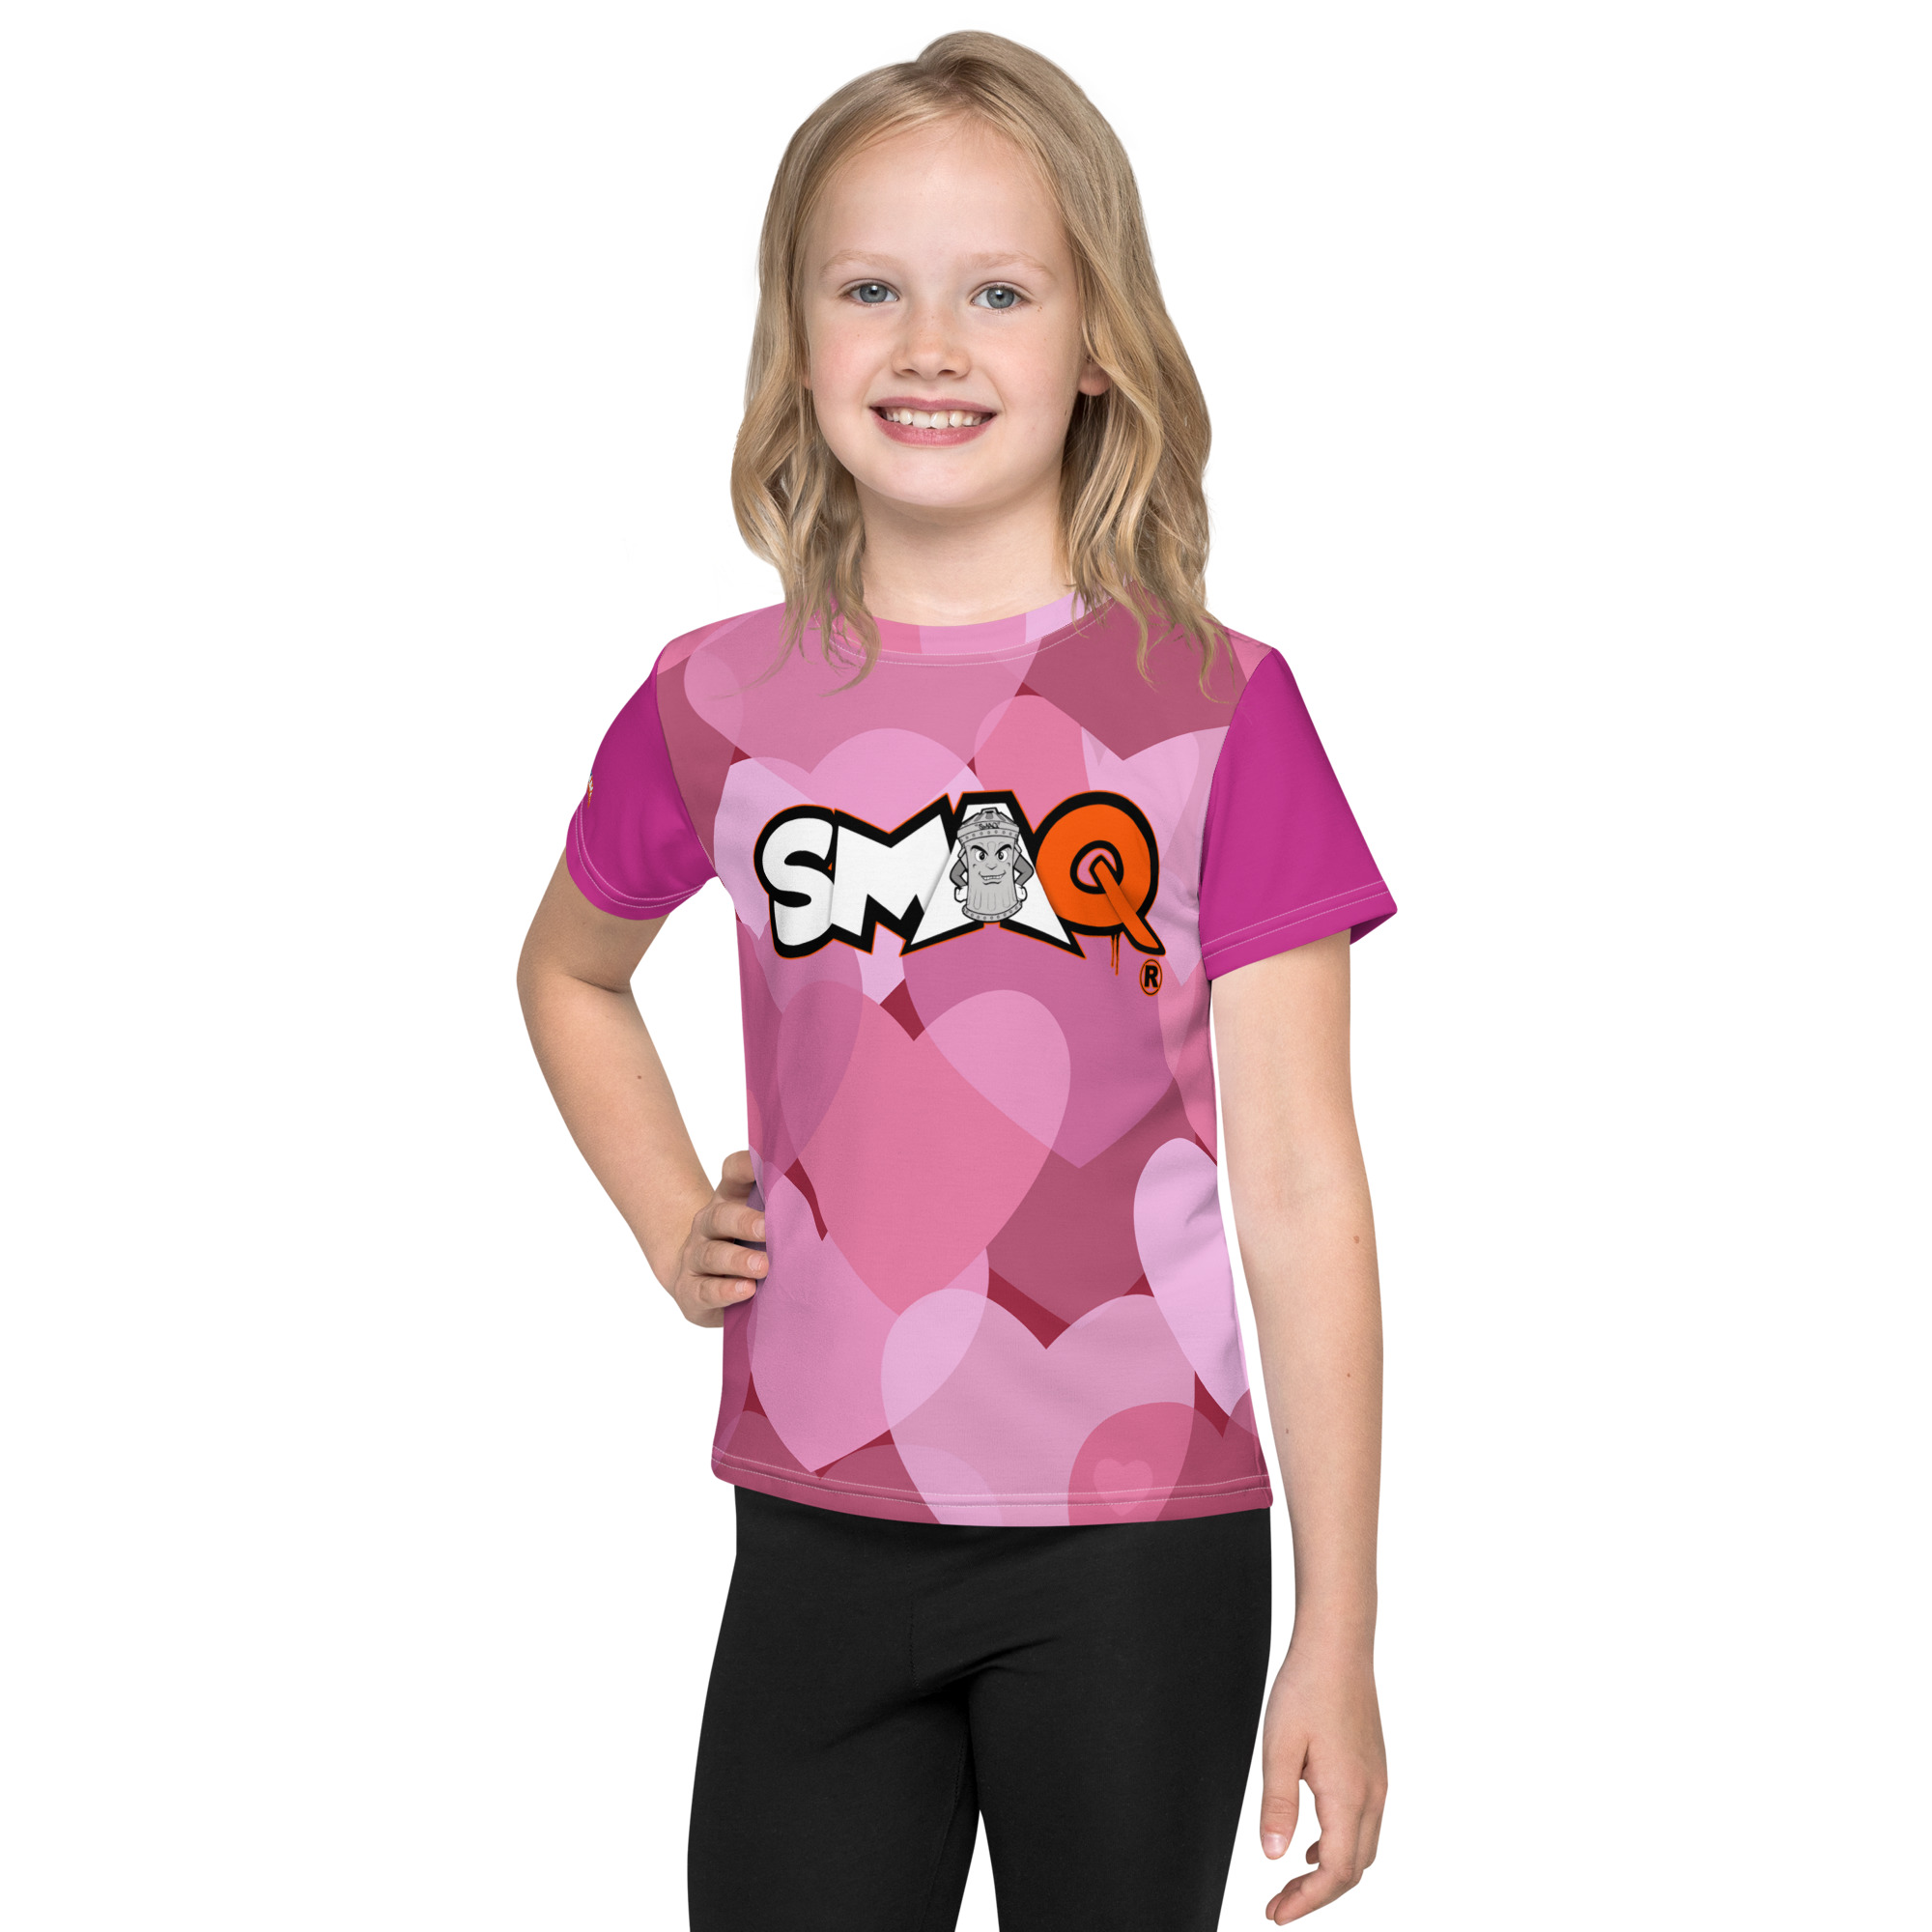 SMAQ Hearts Graffiti Kids crew neck t-shirt